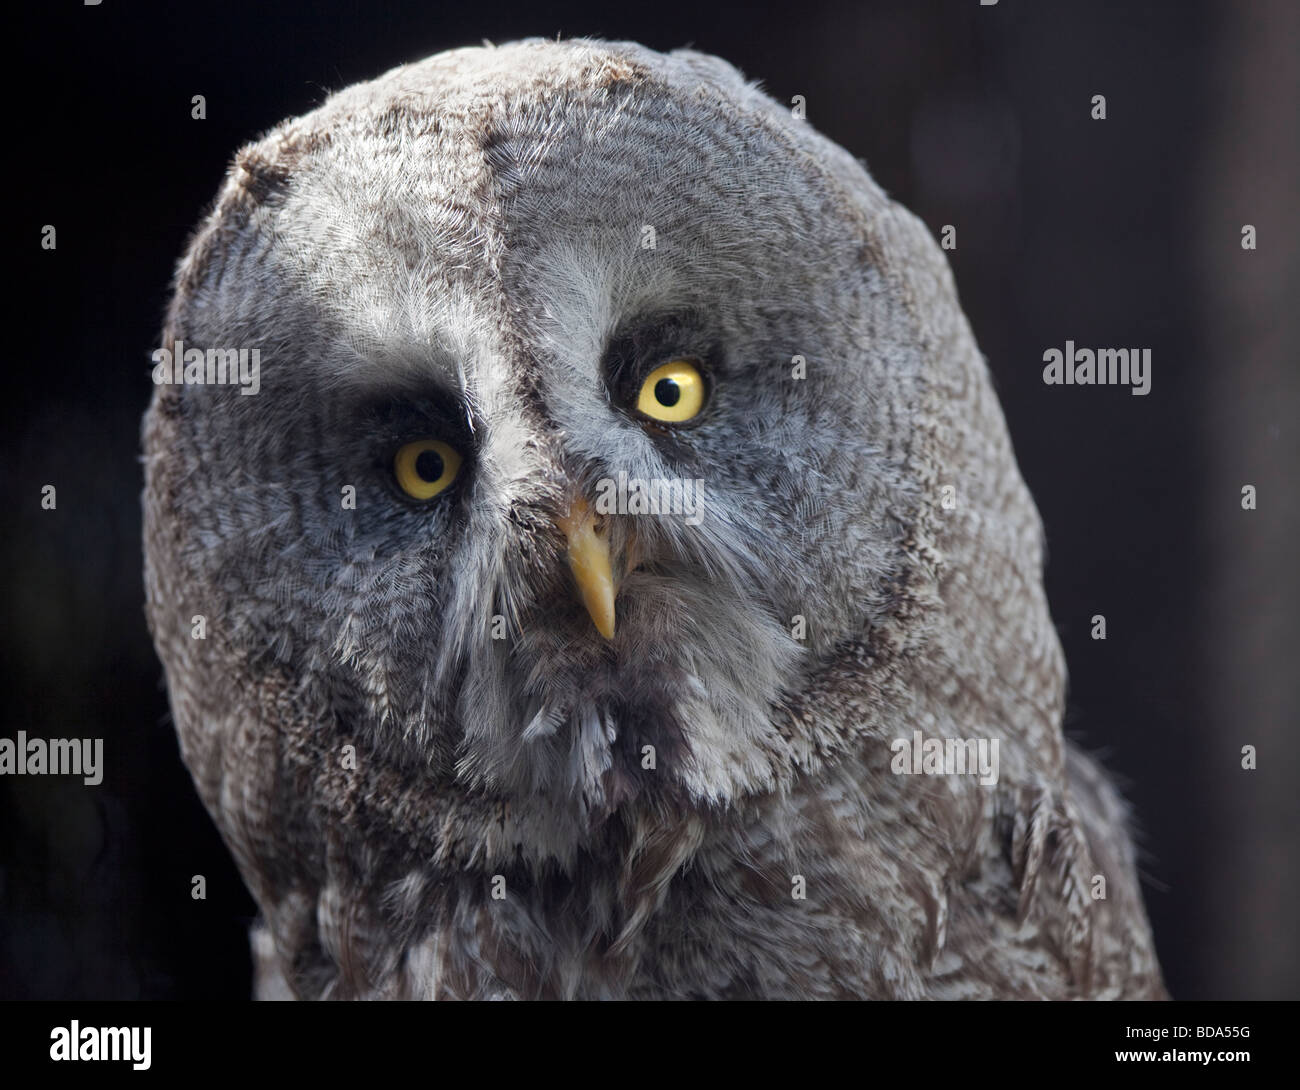 Great Grey Owl (strix nebulosa) portrait Stock Photo